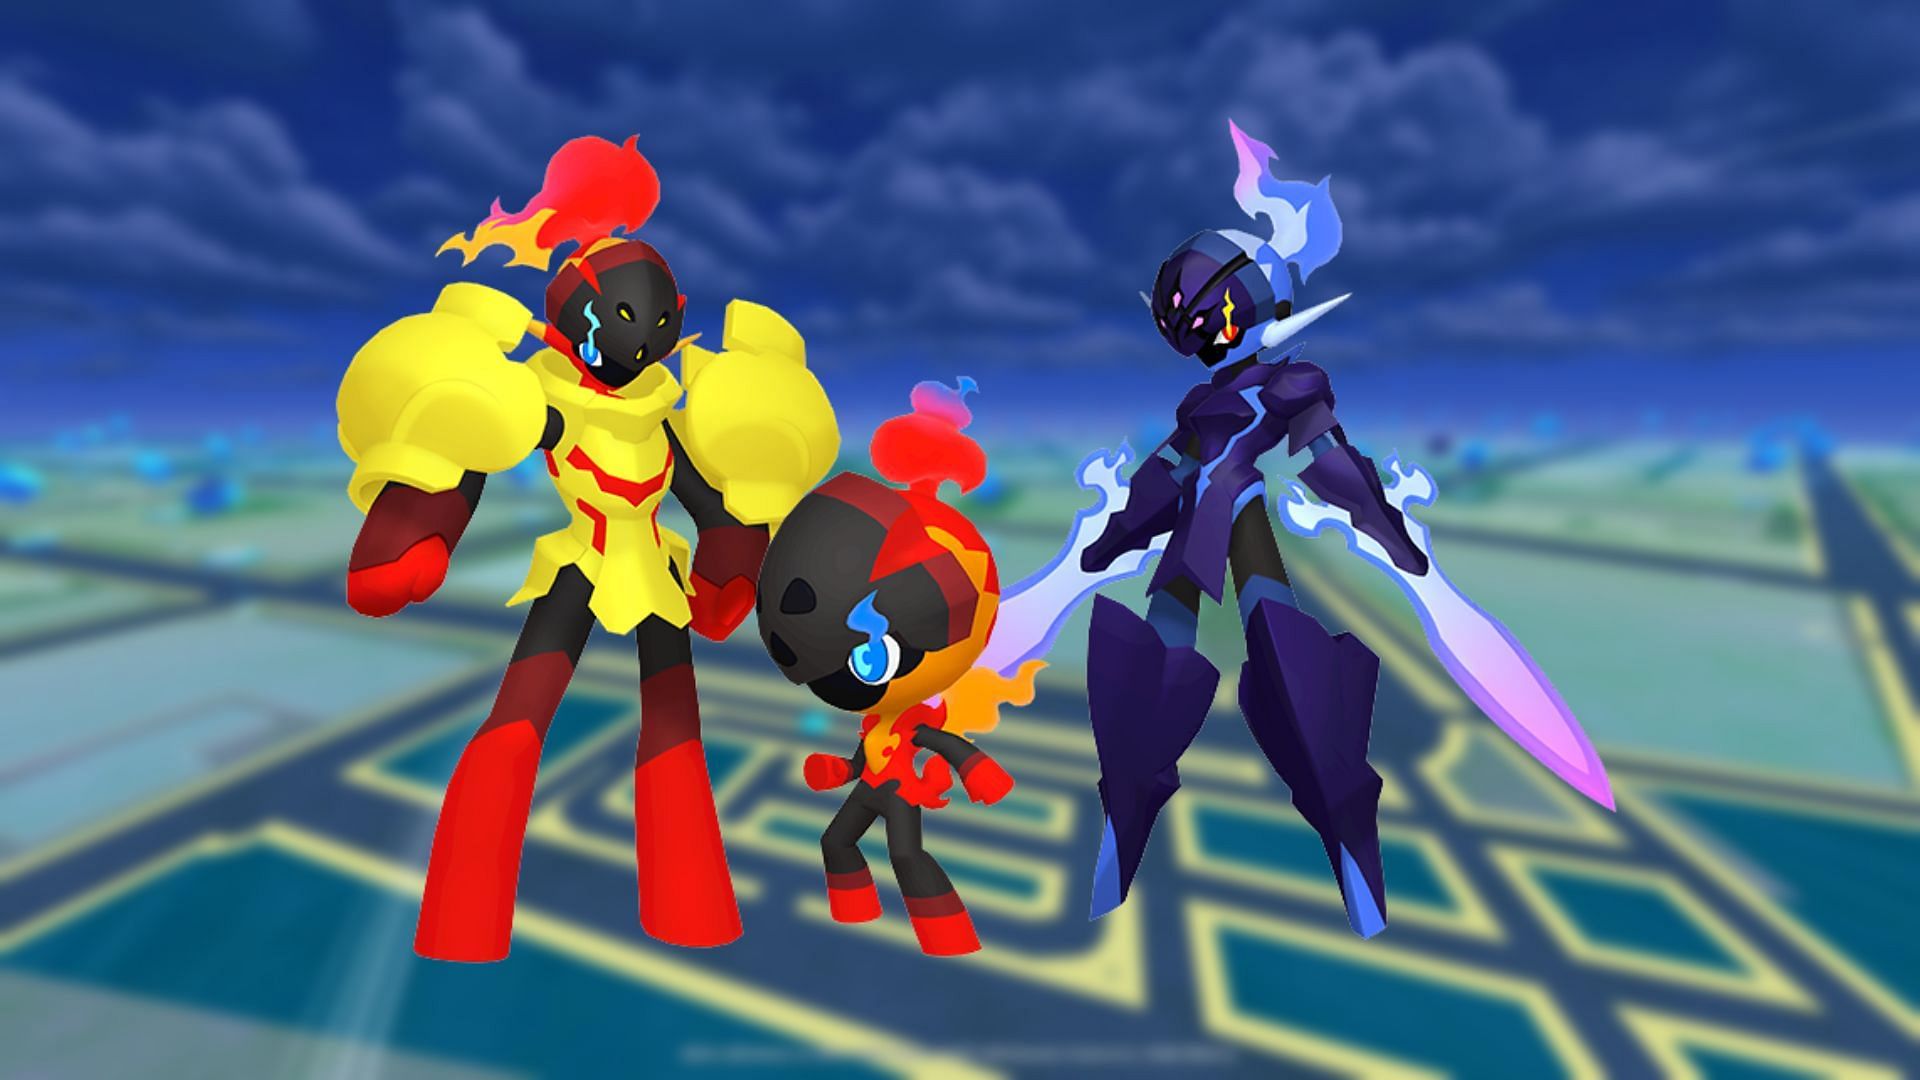 Charcadet, Armarouge e Ceruledge lucenti in Pokemon GO (immagine tramite TPC)